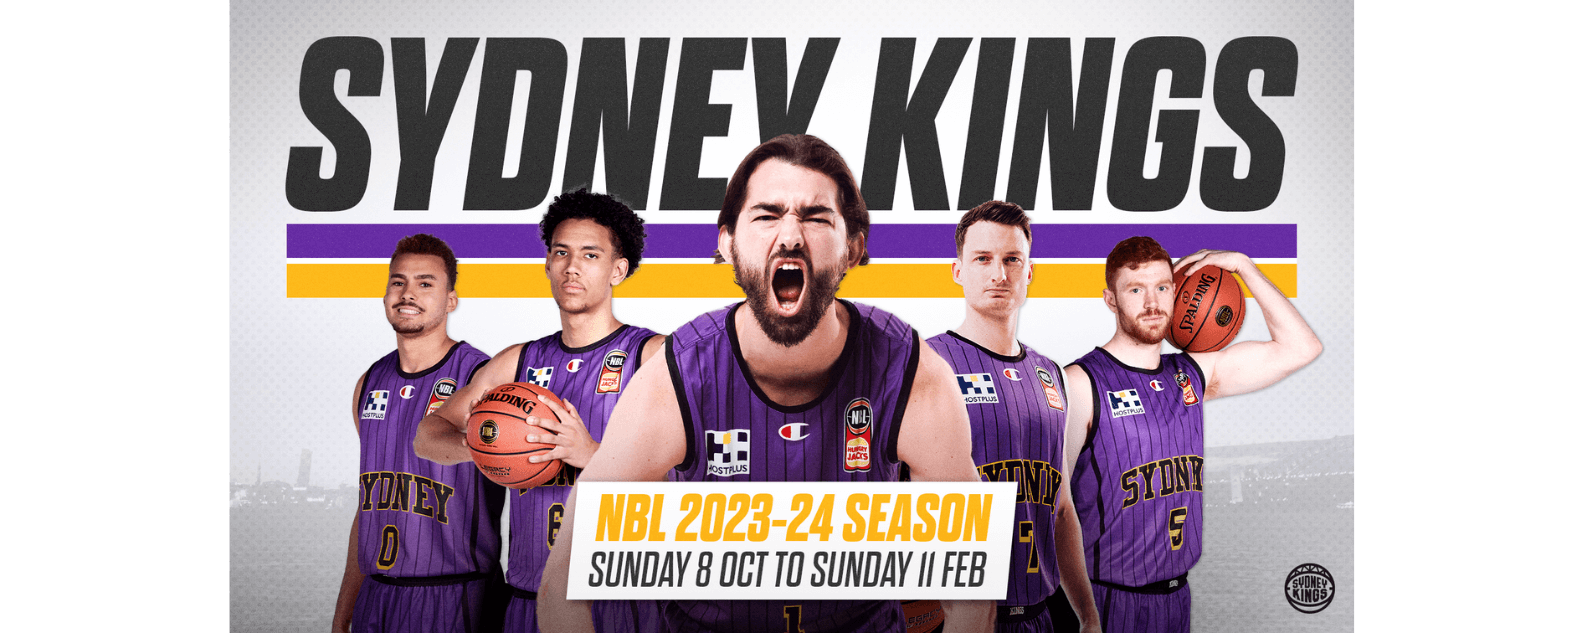 NBL 2023-24 Sydney Kings Qudos Bank Arena banner